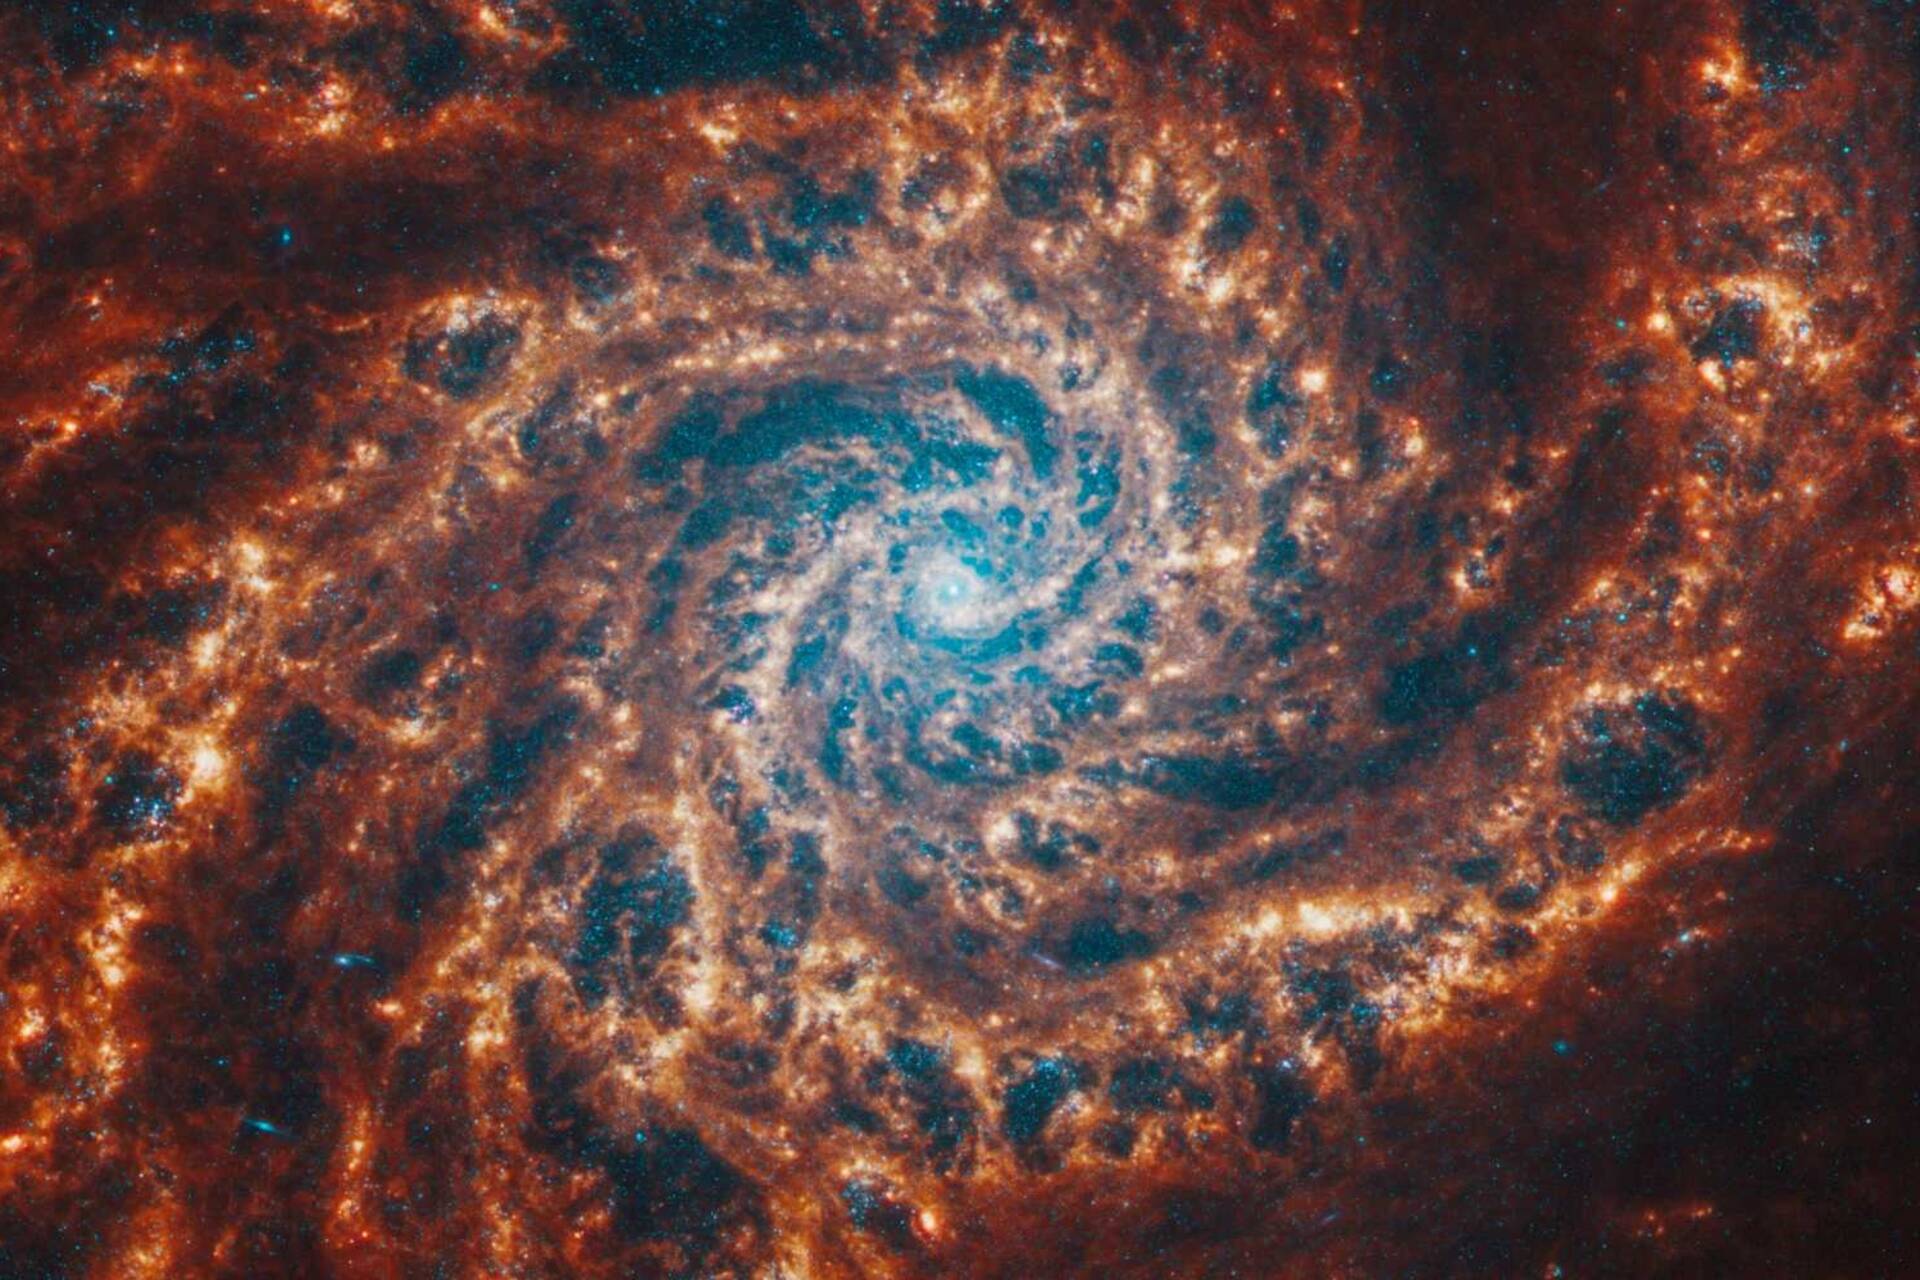 Master in Space Systems: en spiralgalakse avbildet av James Webb-teleskopet